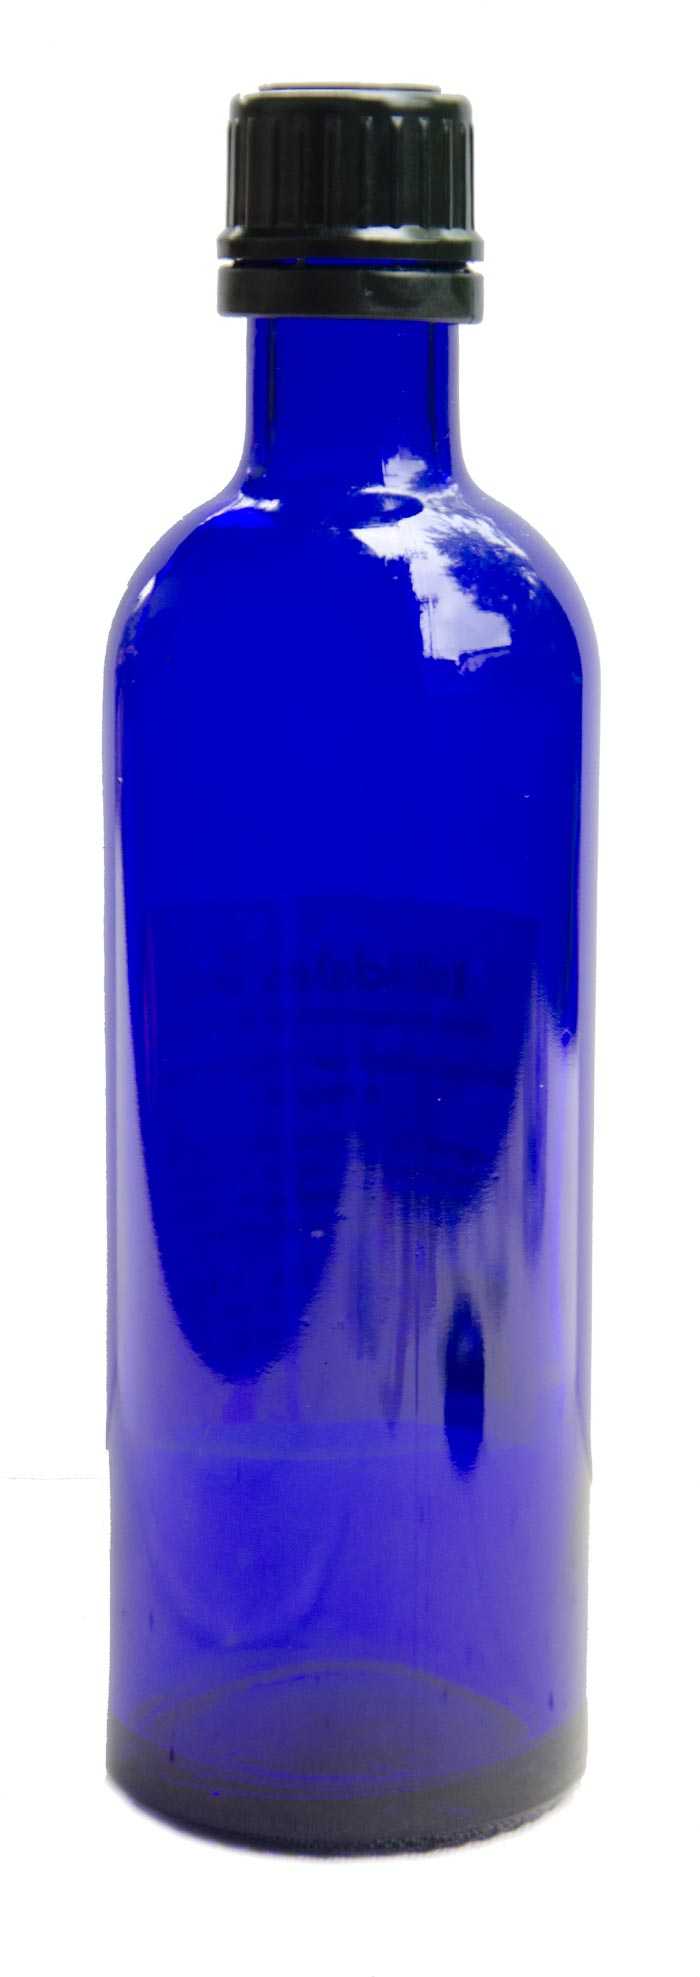 Eine blaue, schlanke Glasflasche mit schwarzem Deckel vor weissem Hintergrund